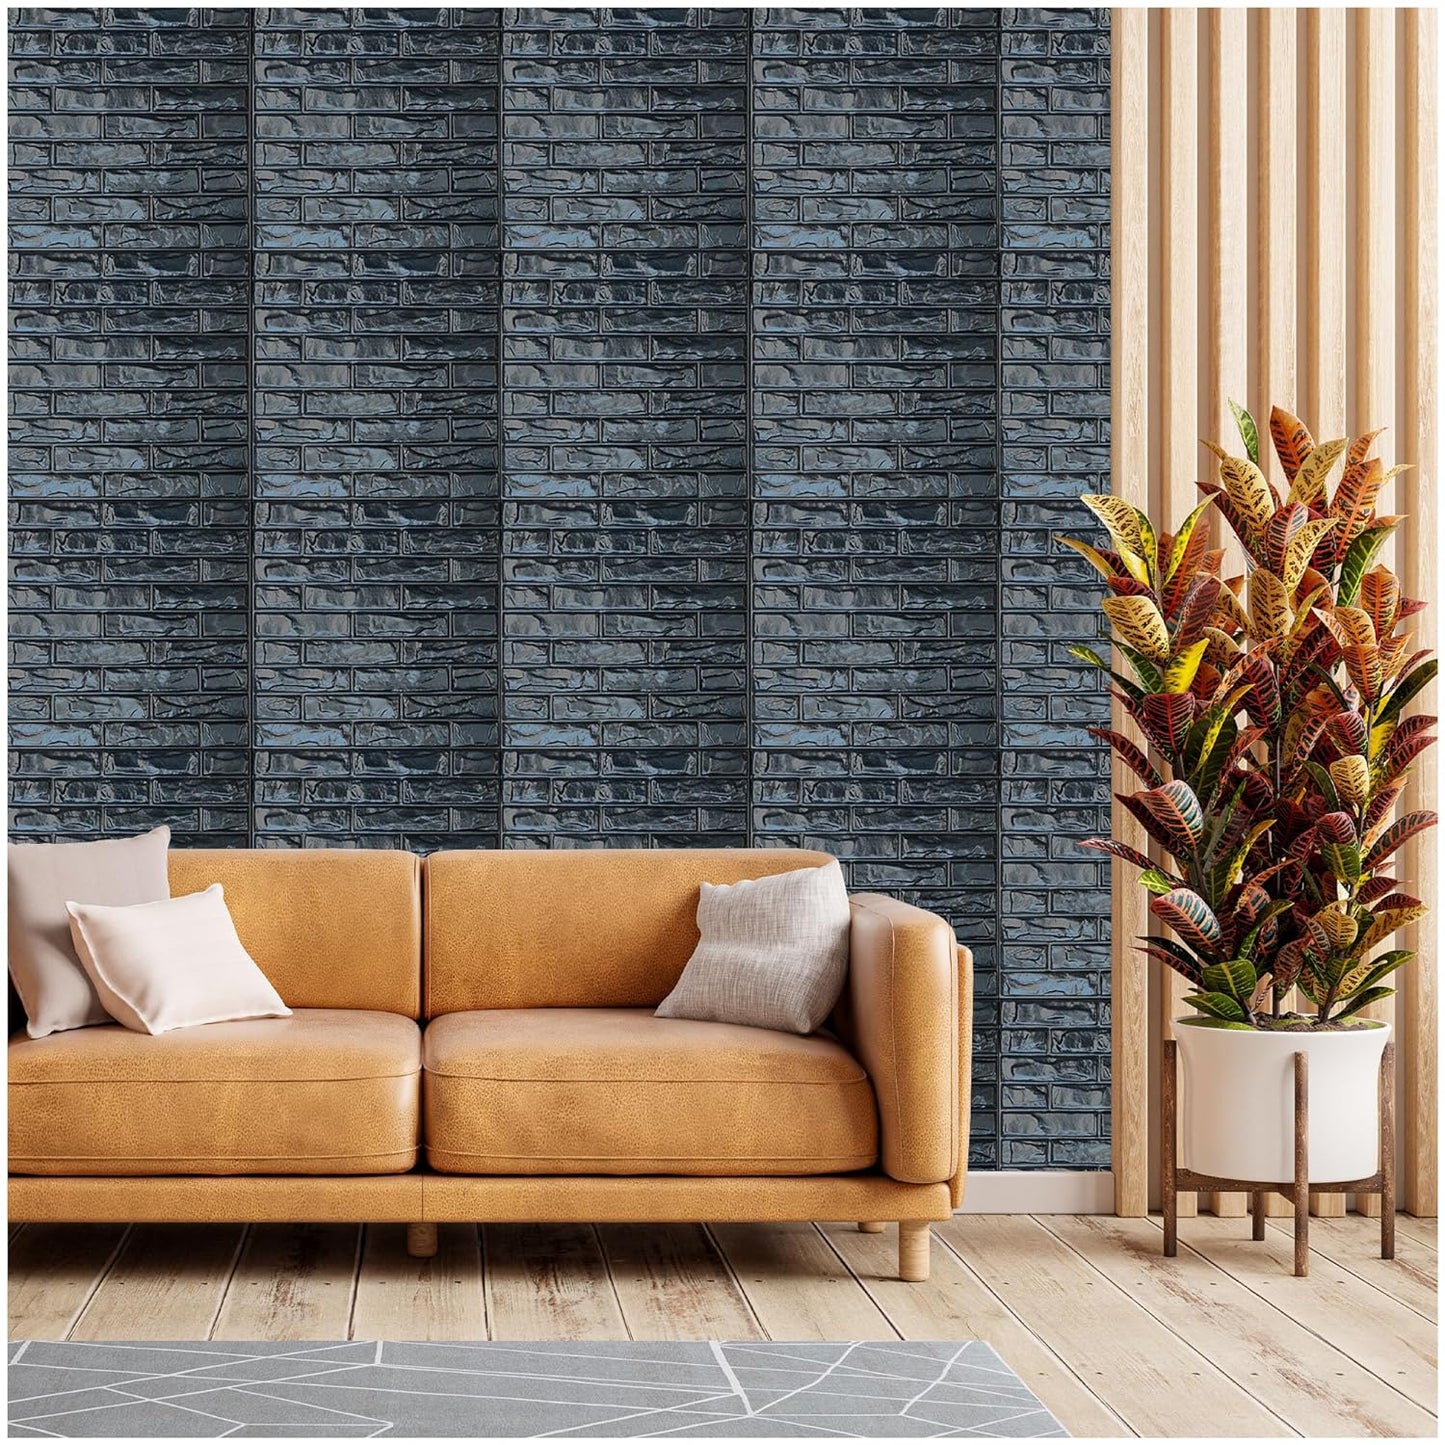 Black Brick Design 3D PVC Wall Panels, A-1